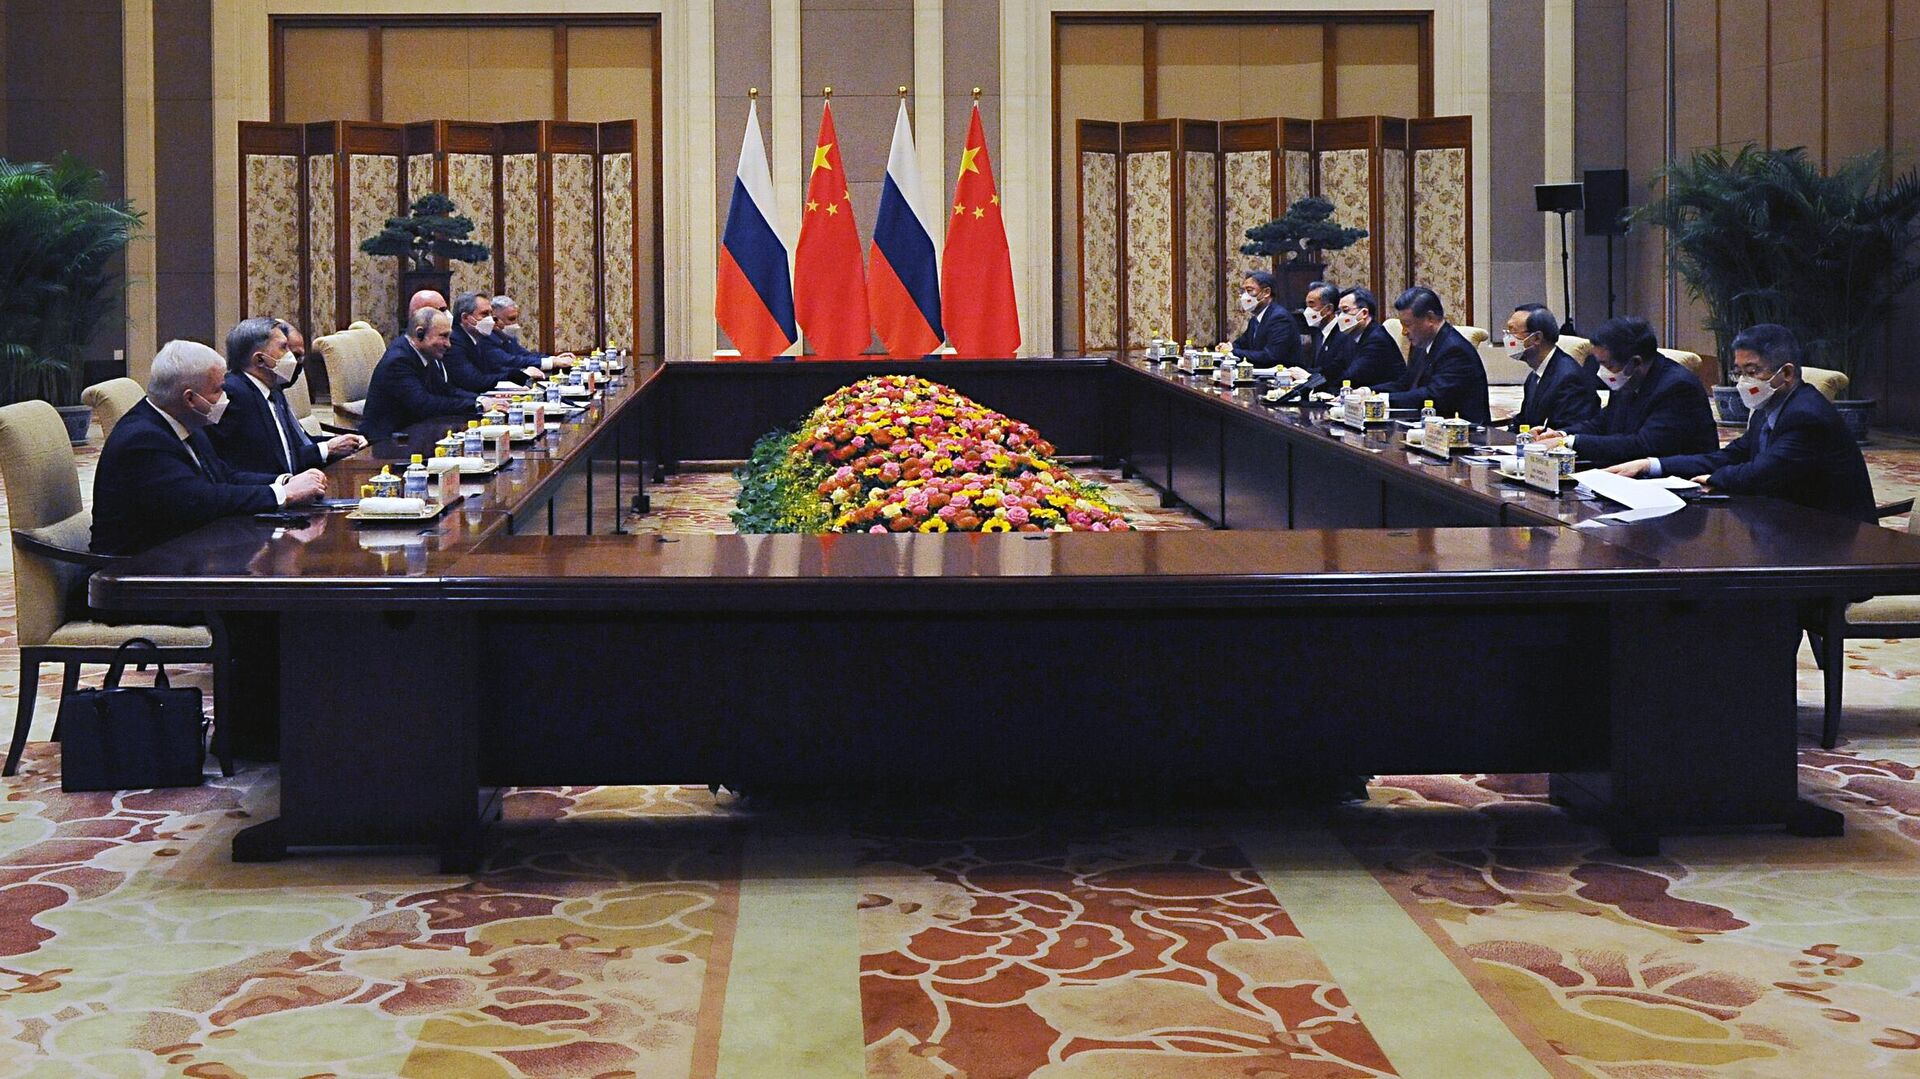 Глава протокола президента рассказал, как готовился визит Путина в Китай